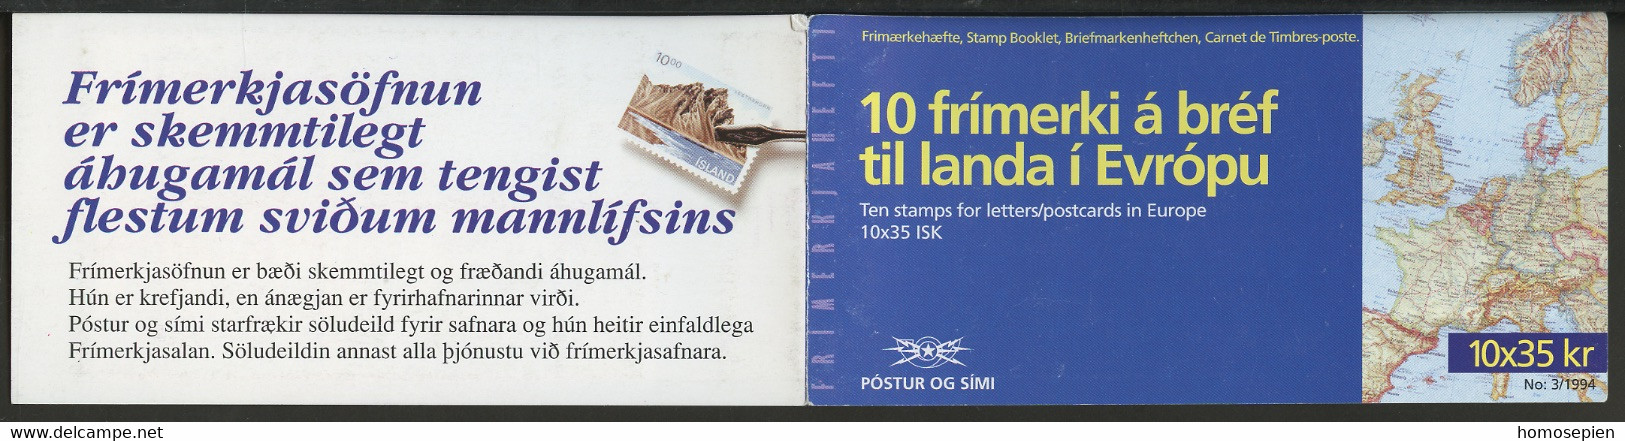 Islande - Island - Iceland Carnet 1994 Y&T N°C753 - Michel N°MH800 *** - 35k EUROPA - Booklets